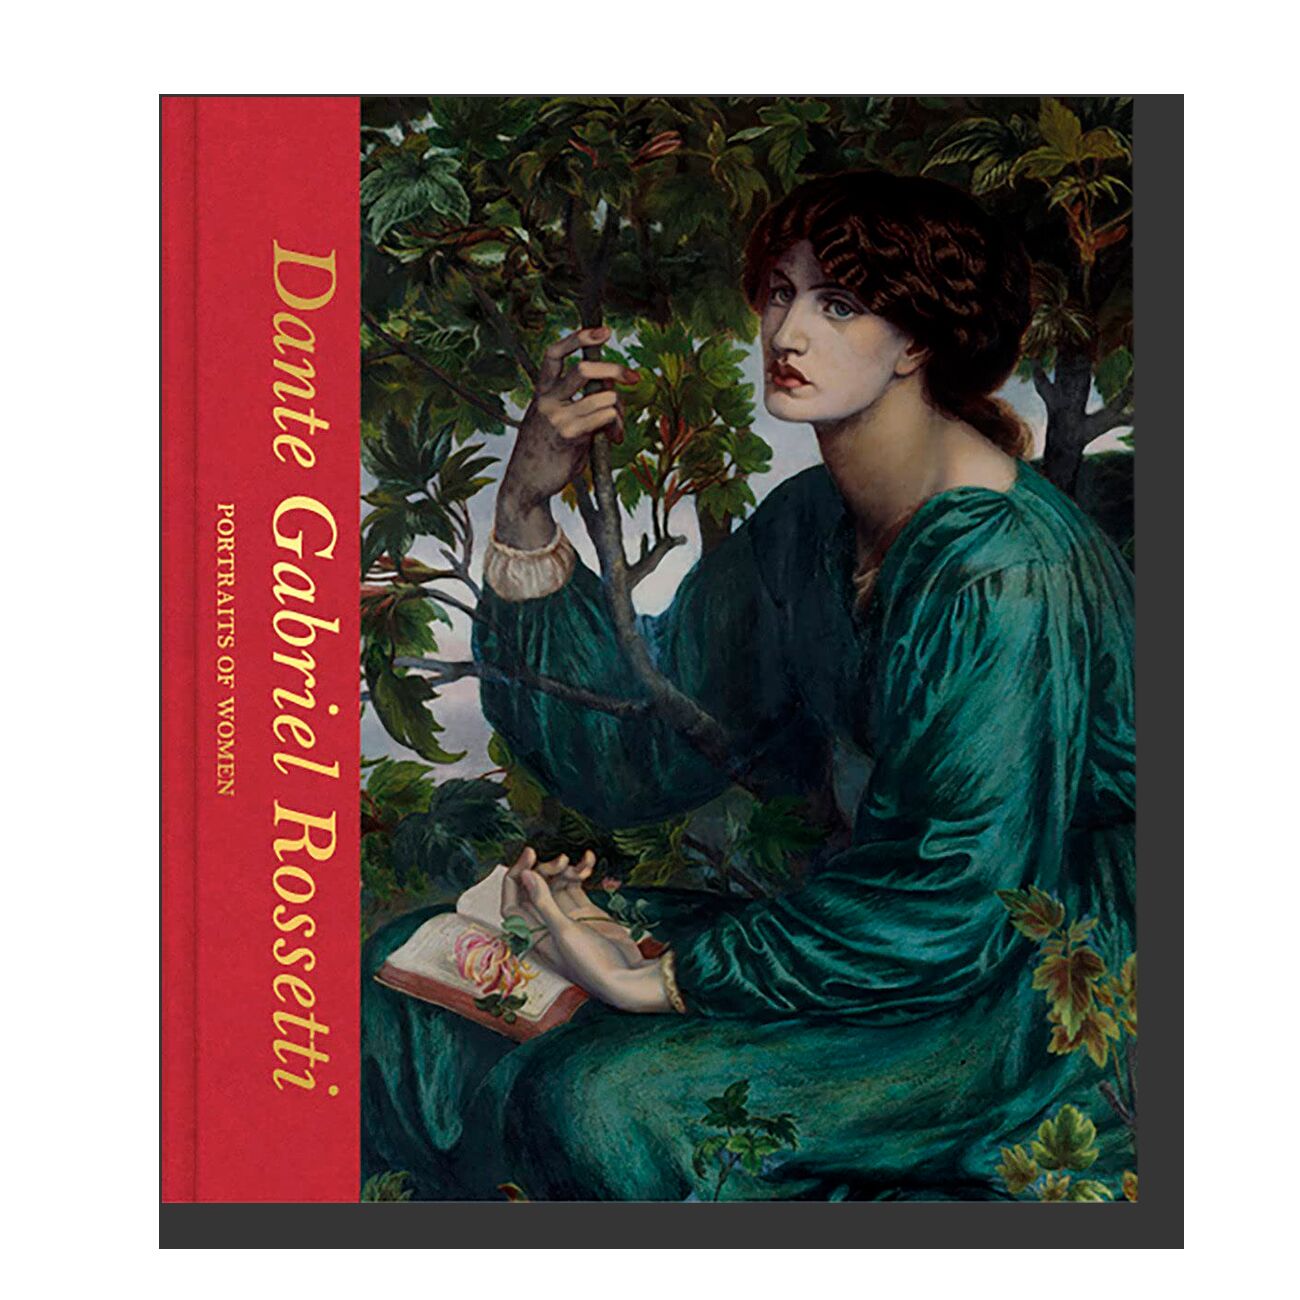 Dante Gabriel Rossetti: Portraits of Women